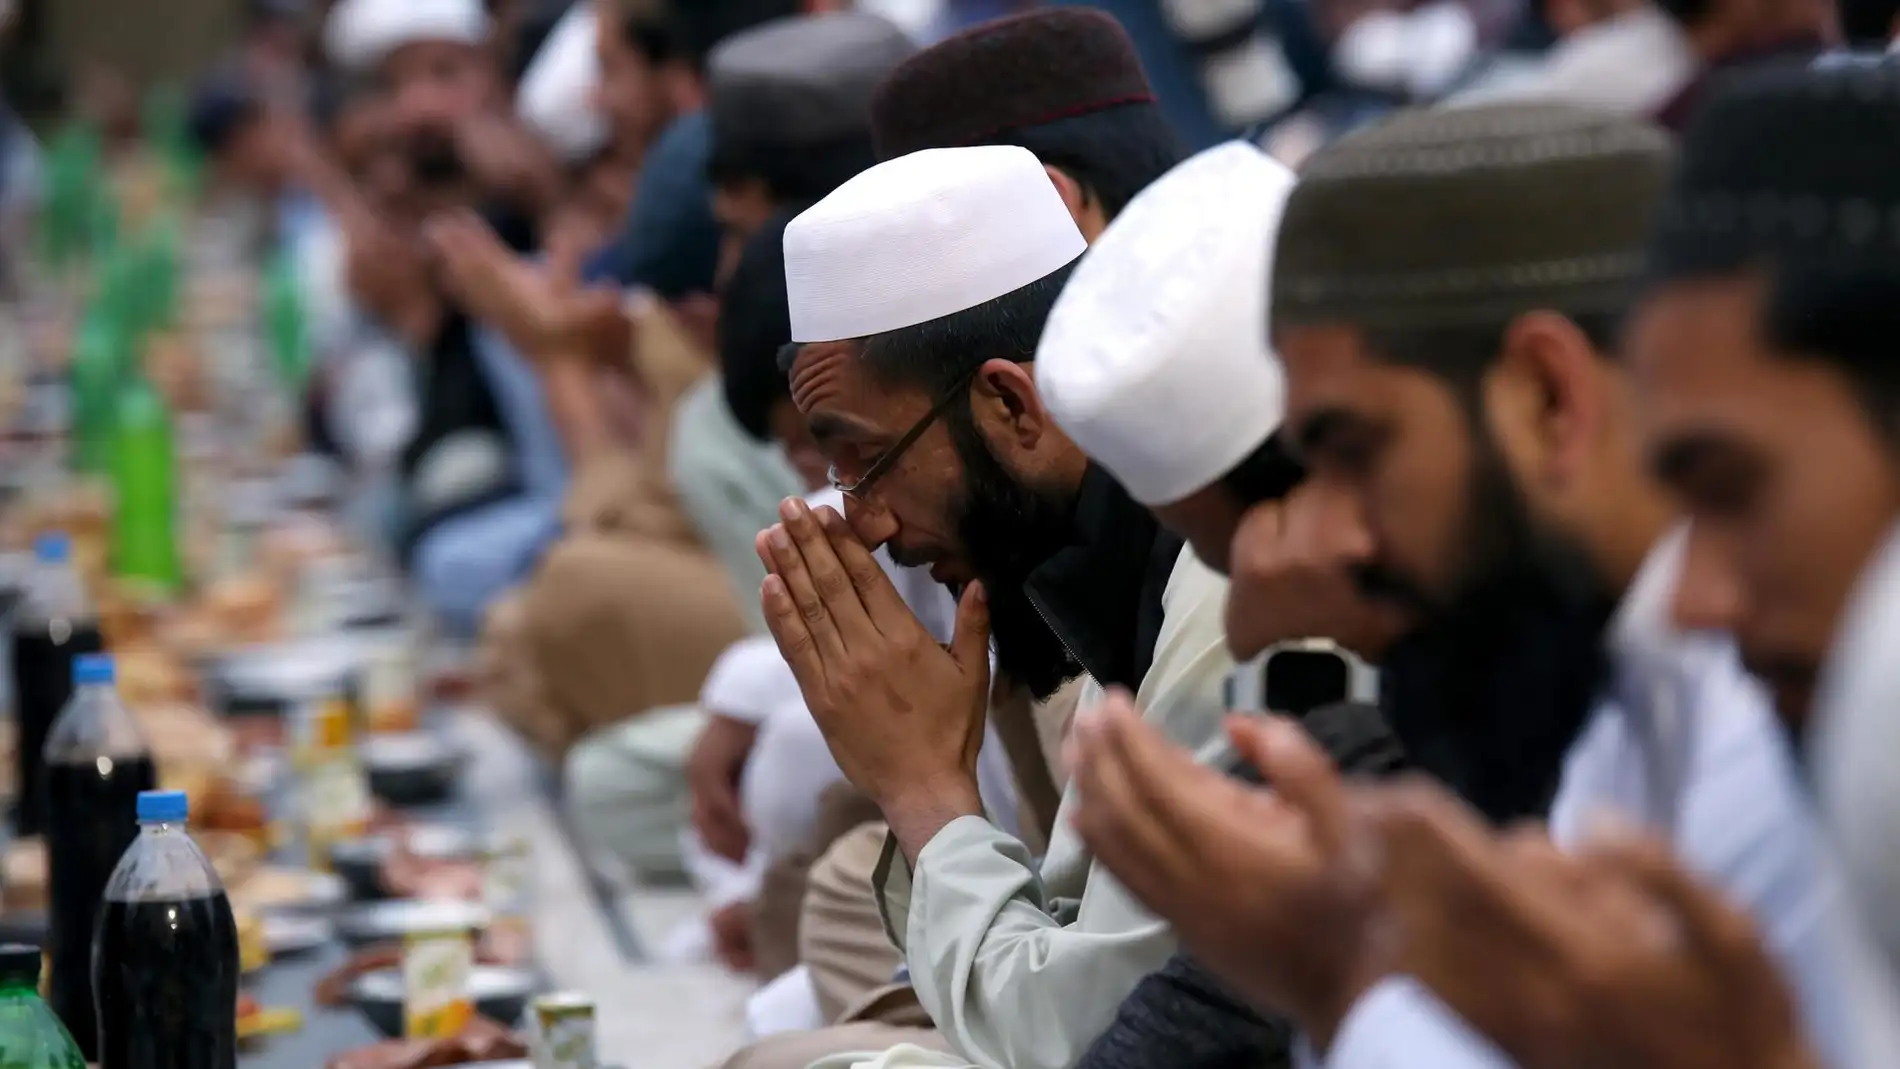 La gente reza mientras espera romper el ayuno en una mezquita durante el mes del Ramadán, en Peshawar, Pakistán